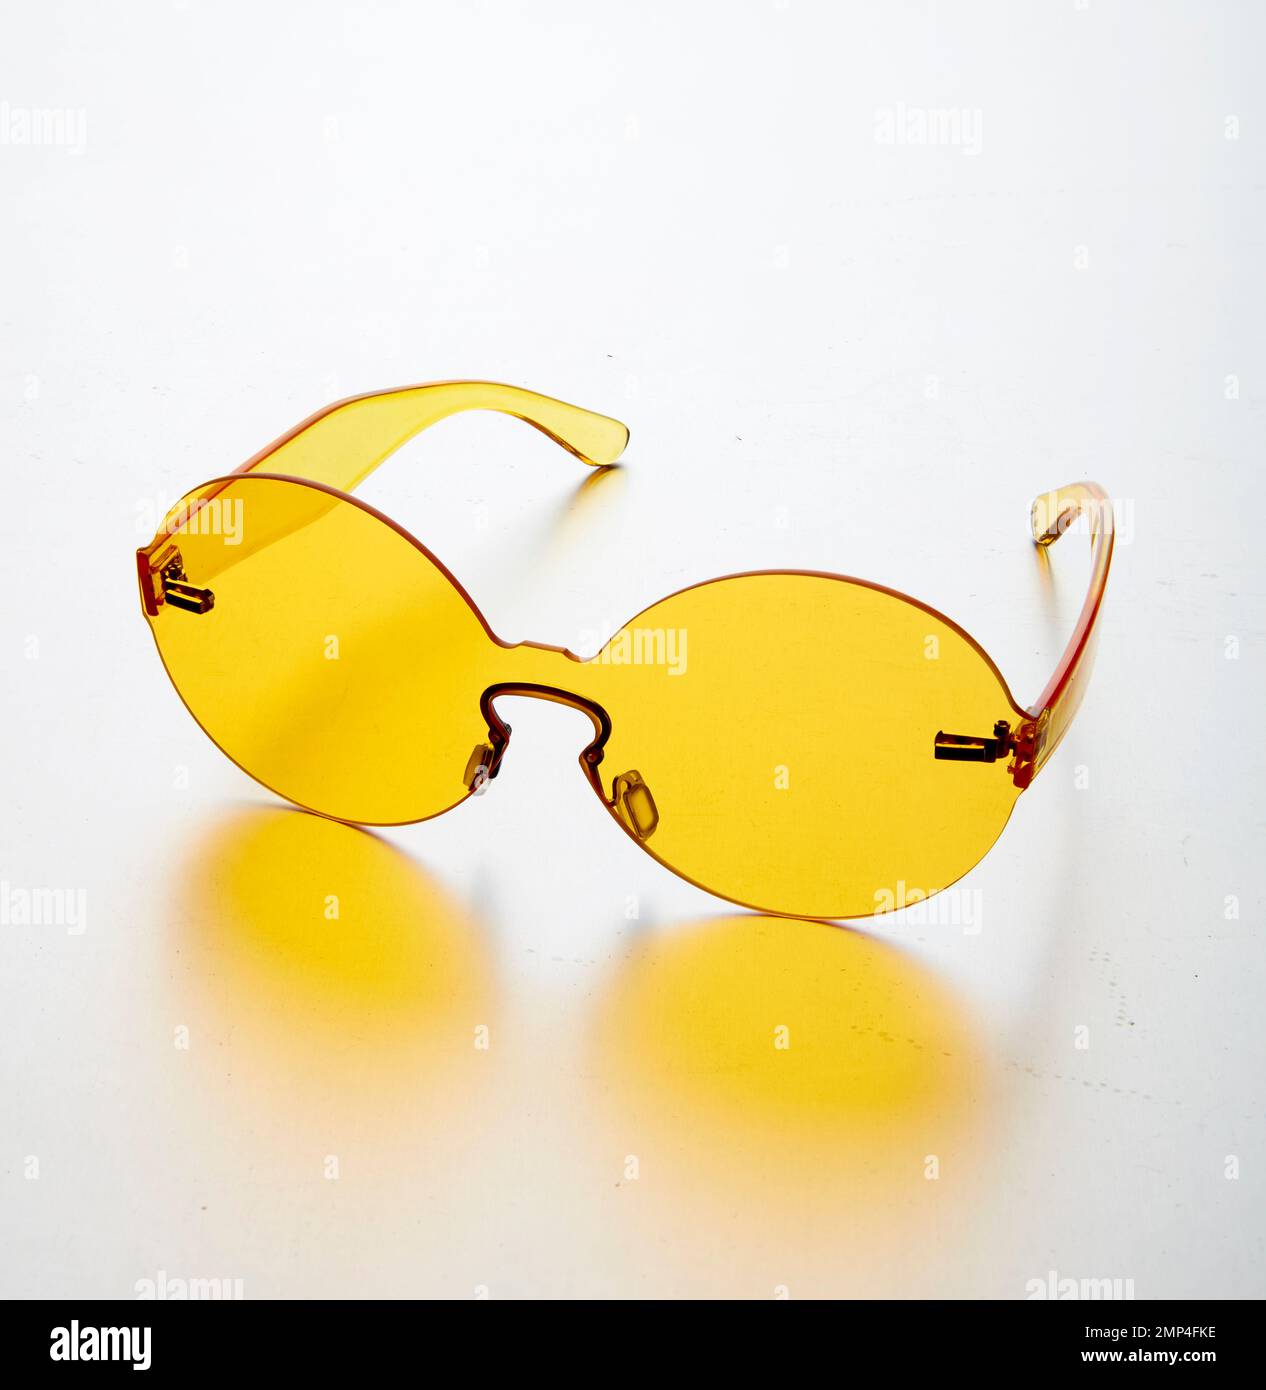 lunettes de soleil en plastique coloré article de mode tendance design simple designer shades groovy années 70 seventies style hip hippy rond iconique lunettes intenses Banque D'Images